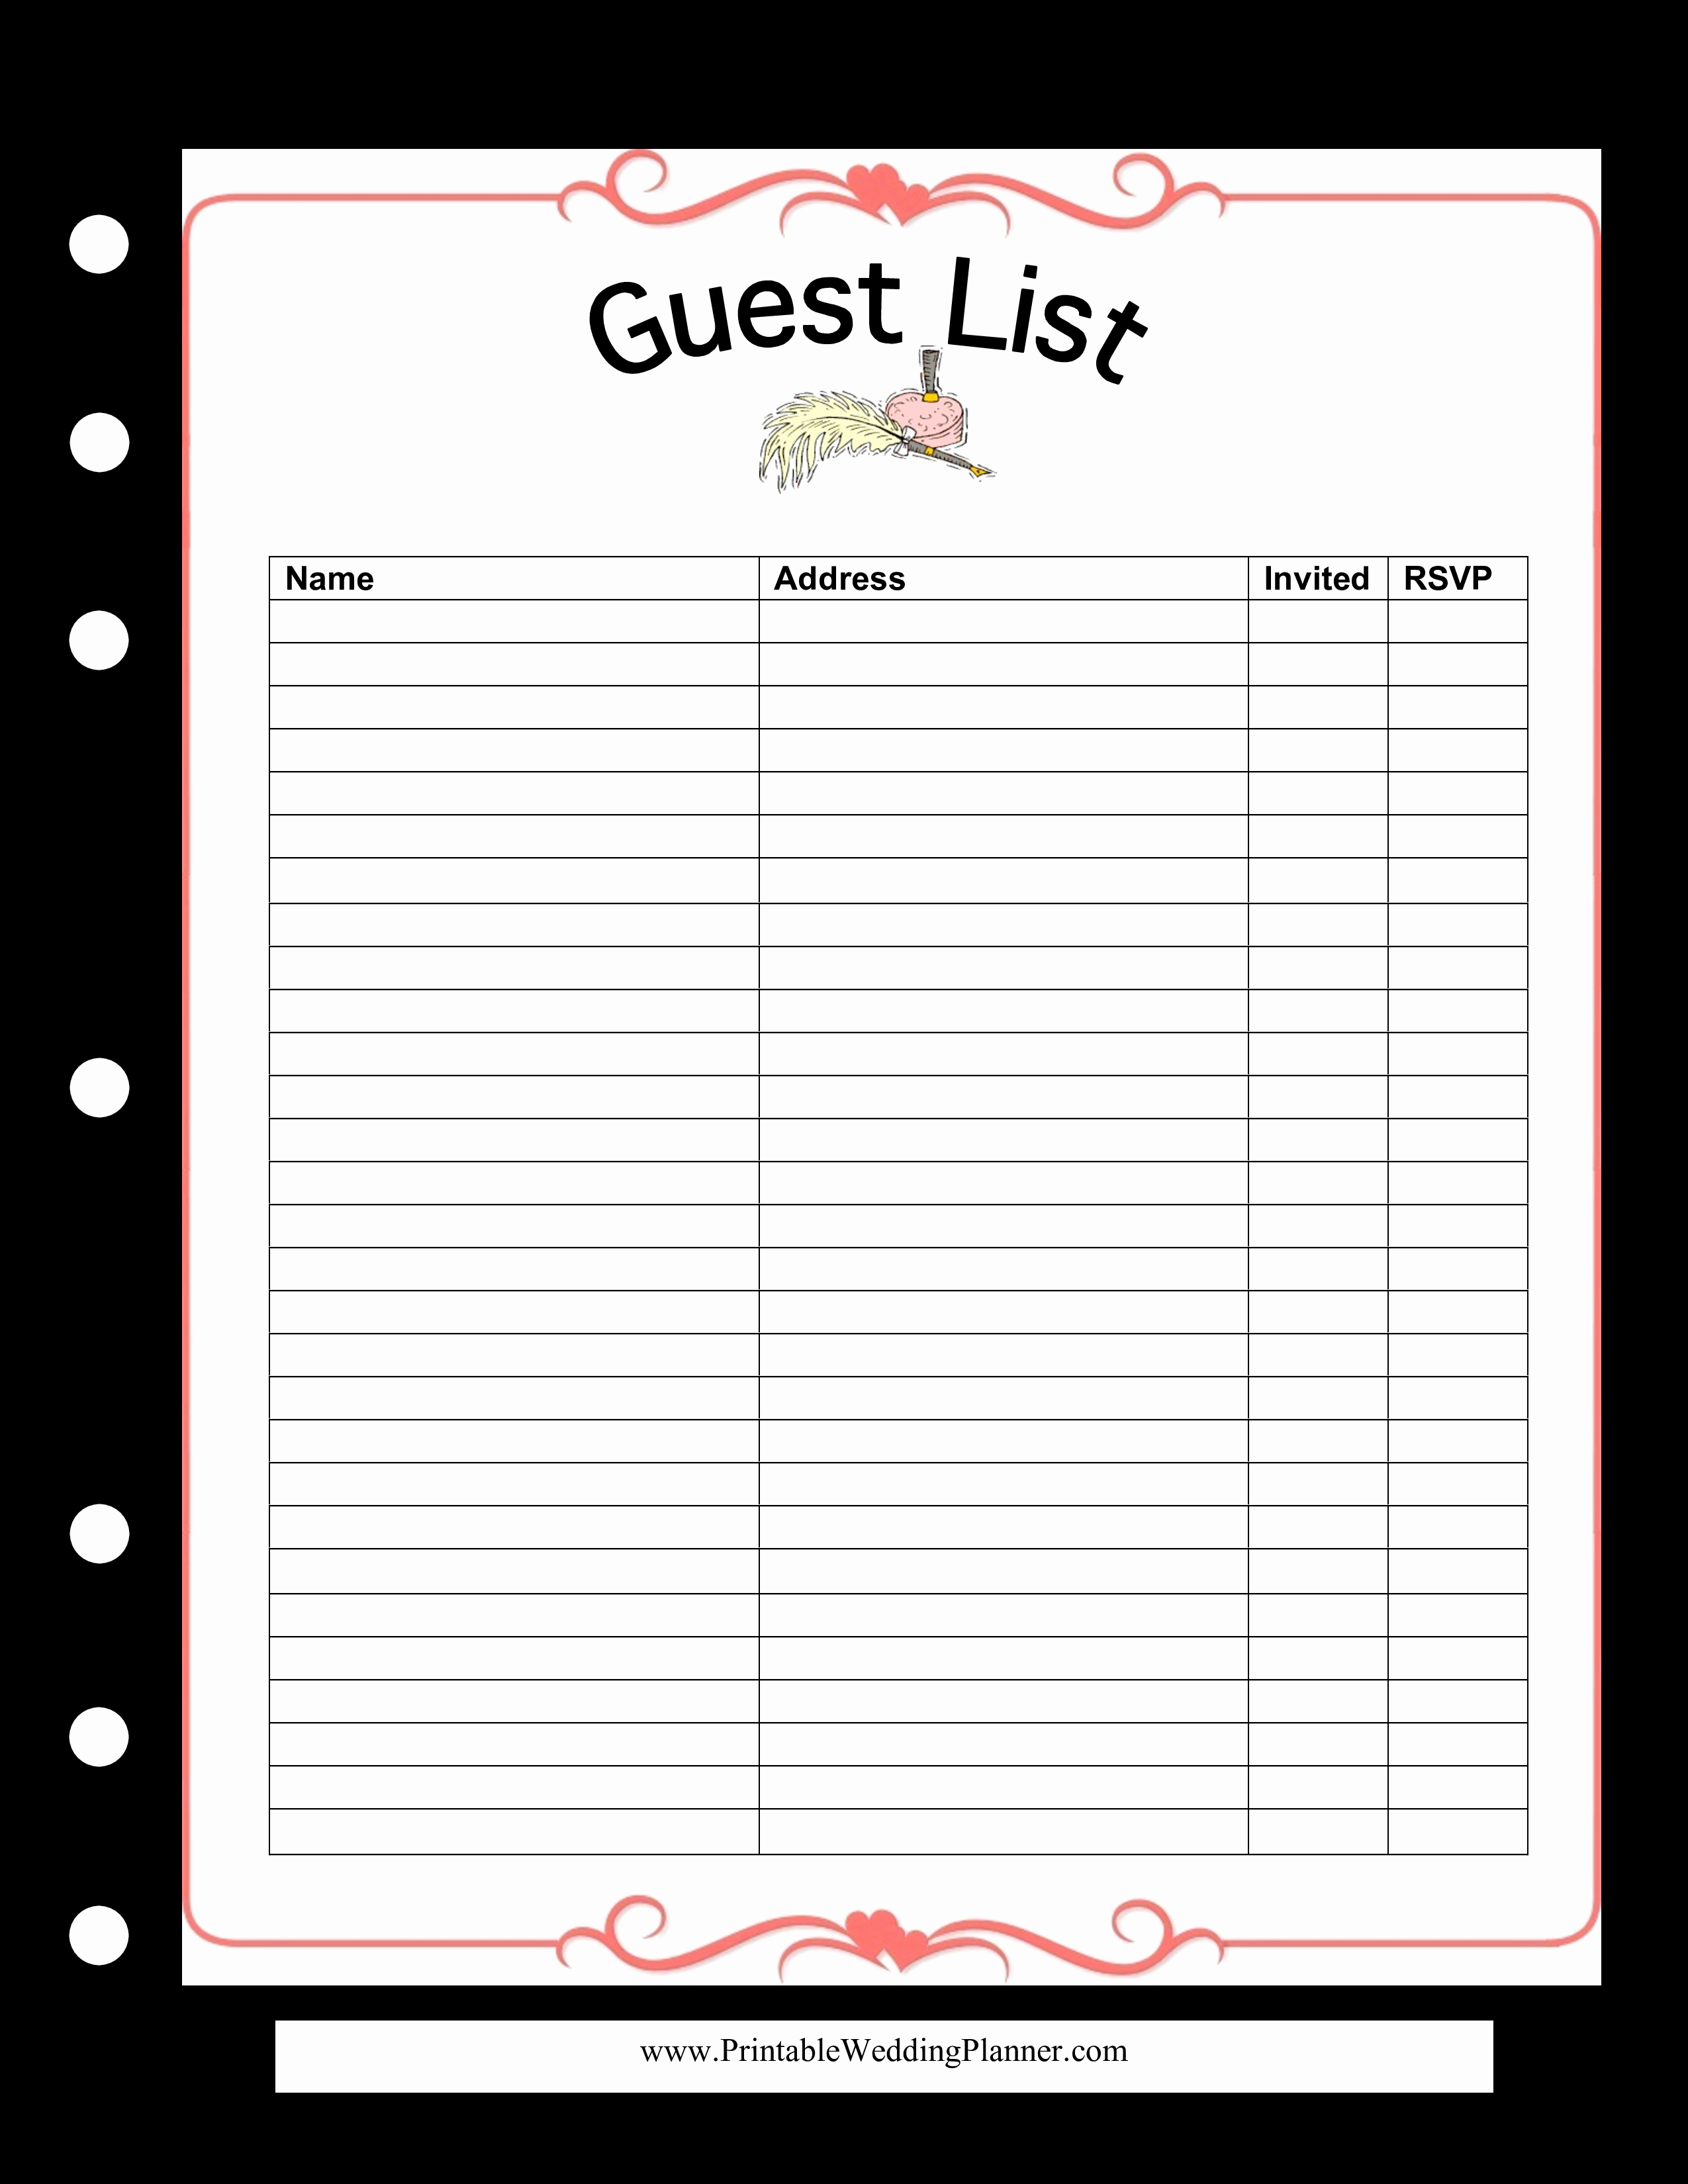 Wedding Guest List Template Best Of Wedding Guest List Spreadsheet